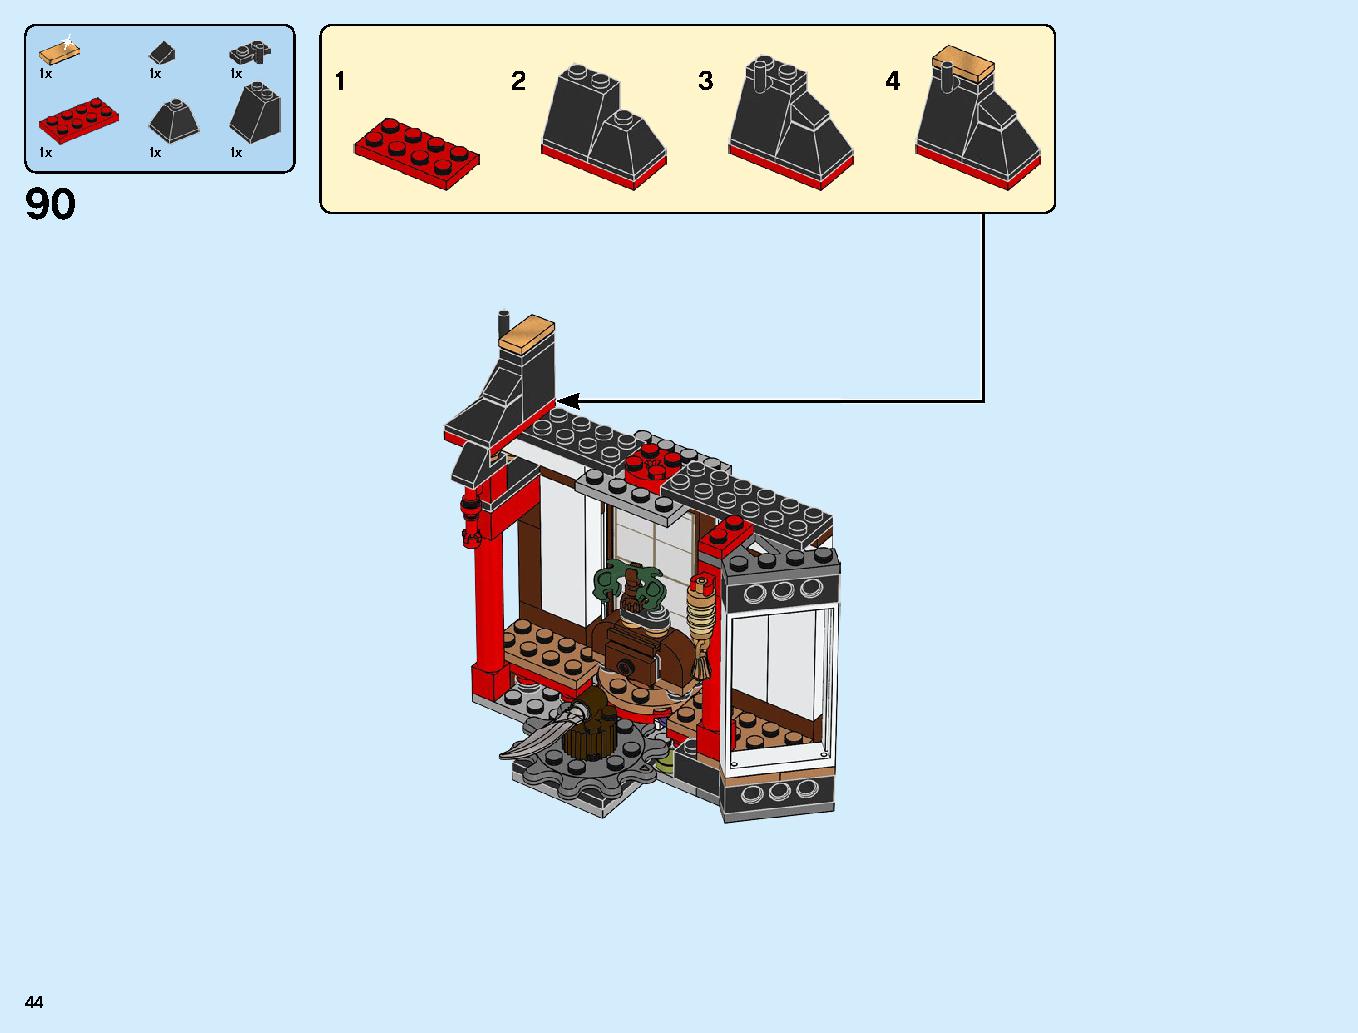 ニンジャ道場 70670 レゴの商品情報 レゴの説明書・組立方法 44 page